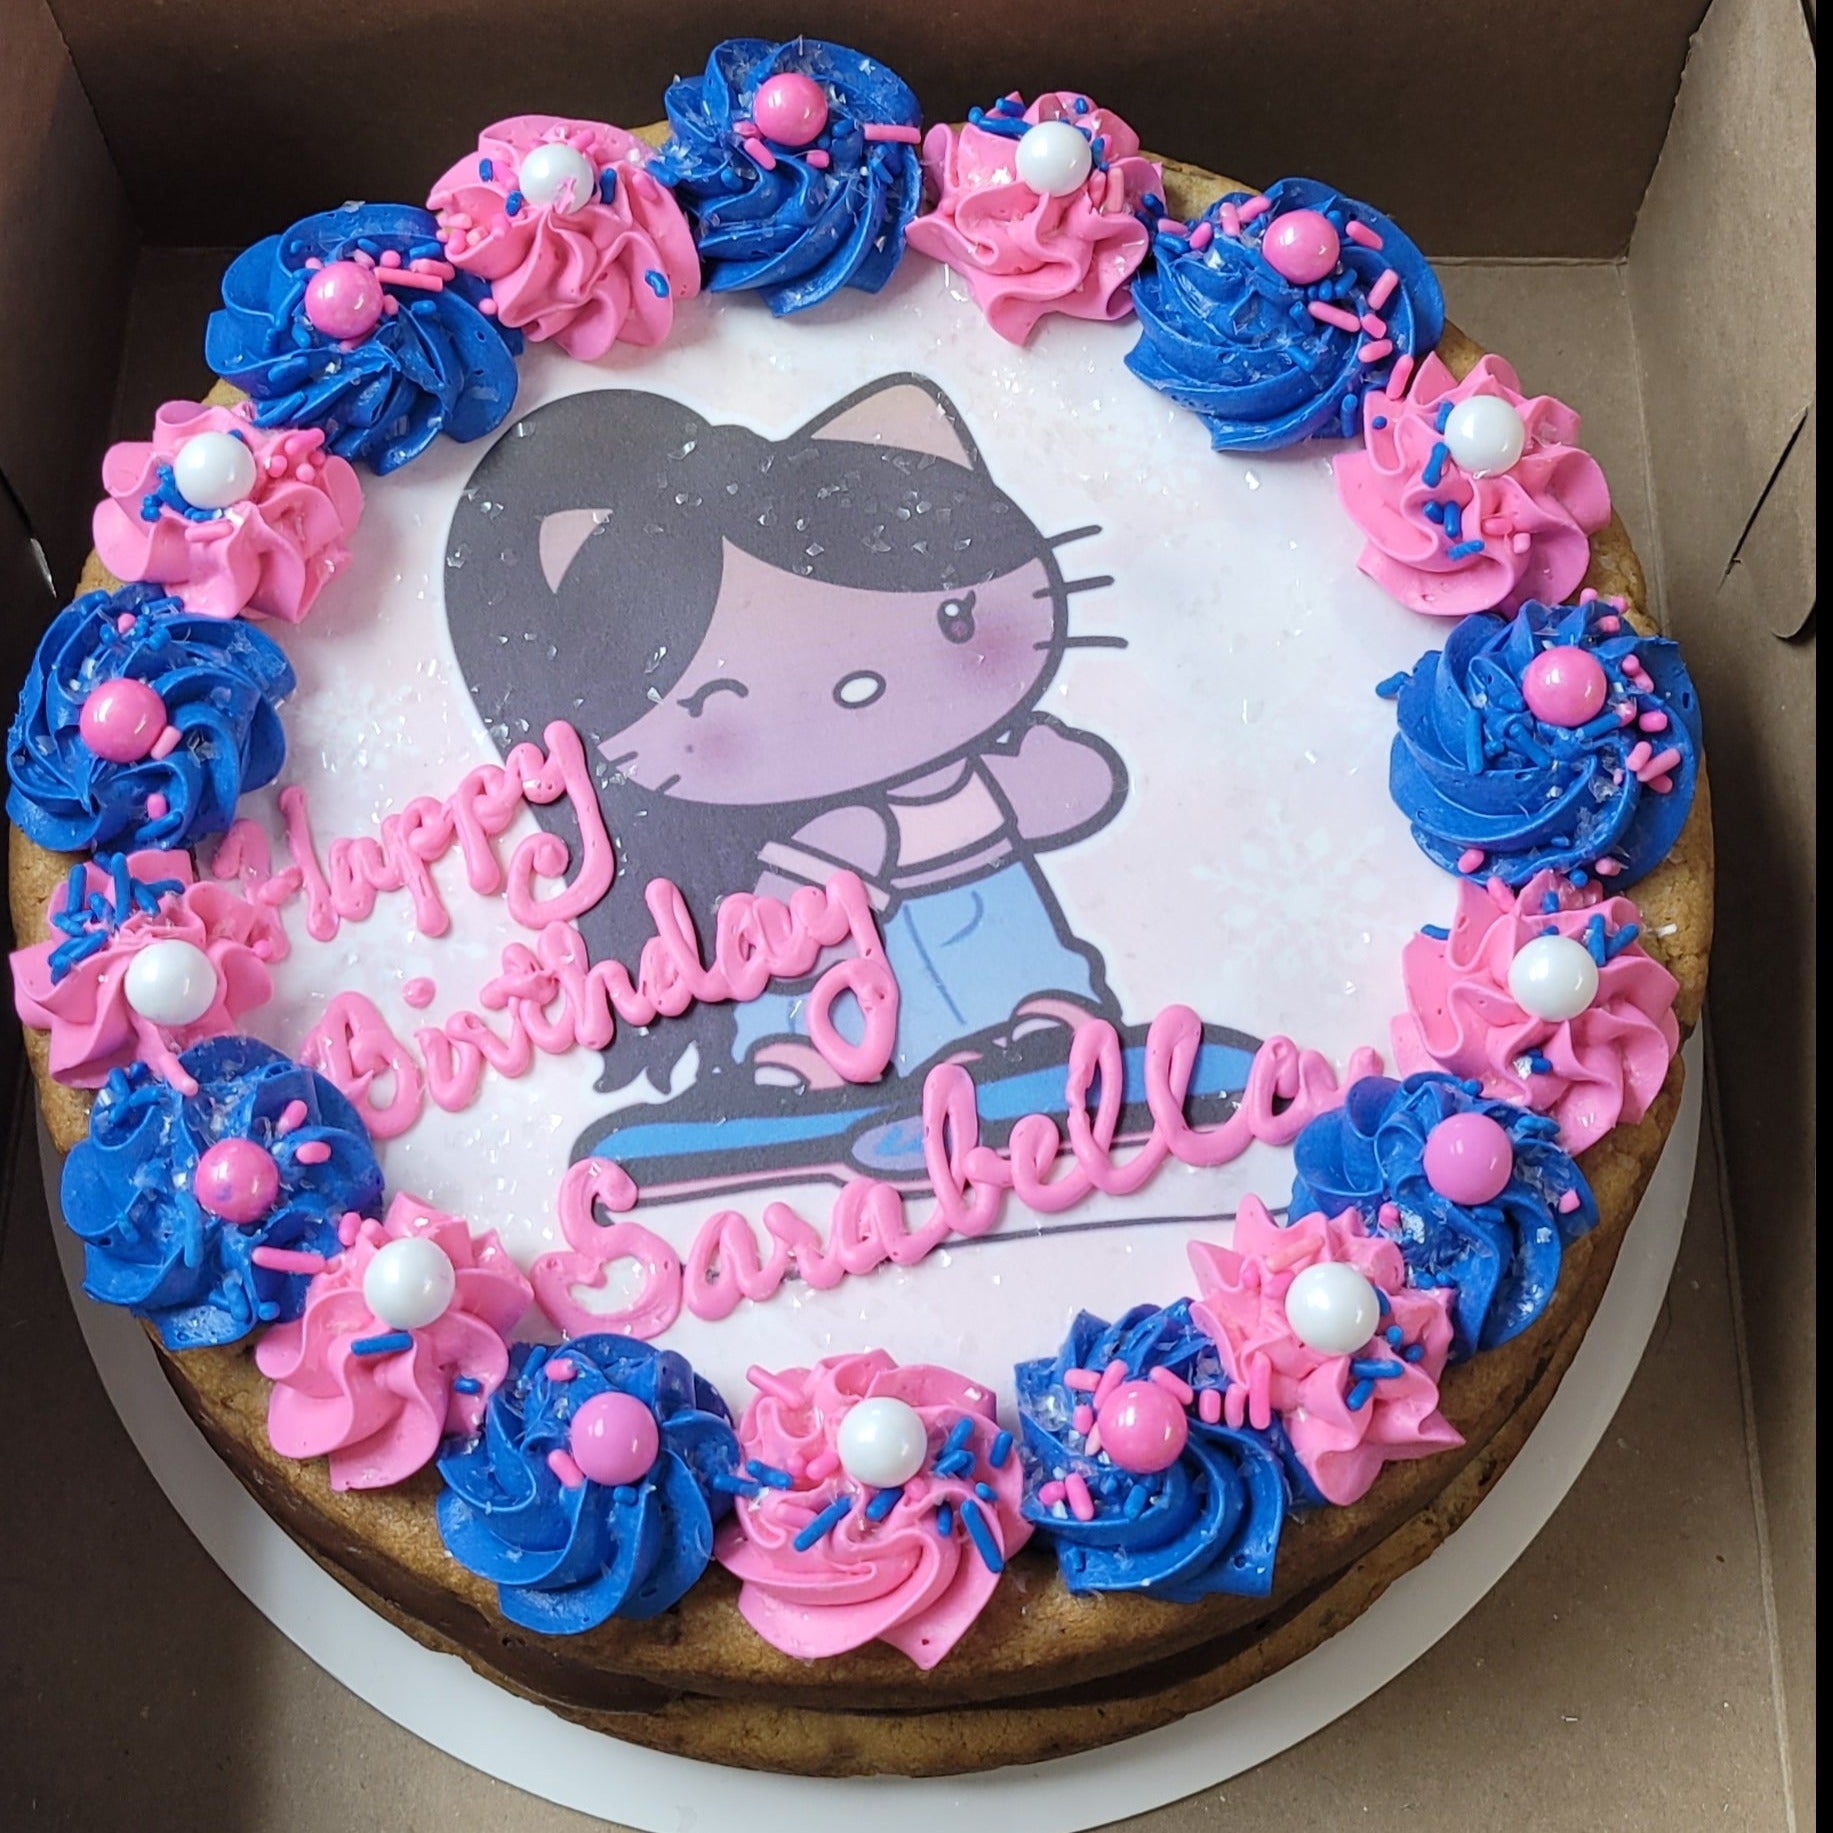 ☂︎︎ ⚠︎︎𝕴𝖓𝖉𝖎𝖊 𝕬𝖊𝖘𝖙𝖍𝖊𝖙𝖎𝖈⚠︎︎ ☂︎︎ | Cute birthday cakes, Pretty  birthday cakes, 14th birthday cakes